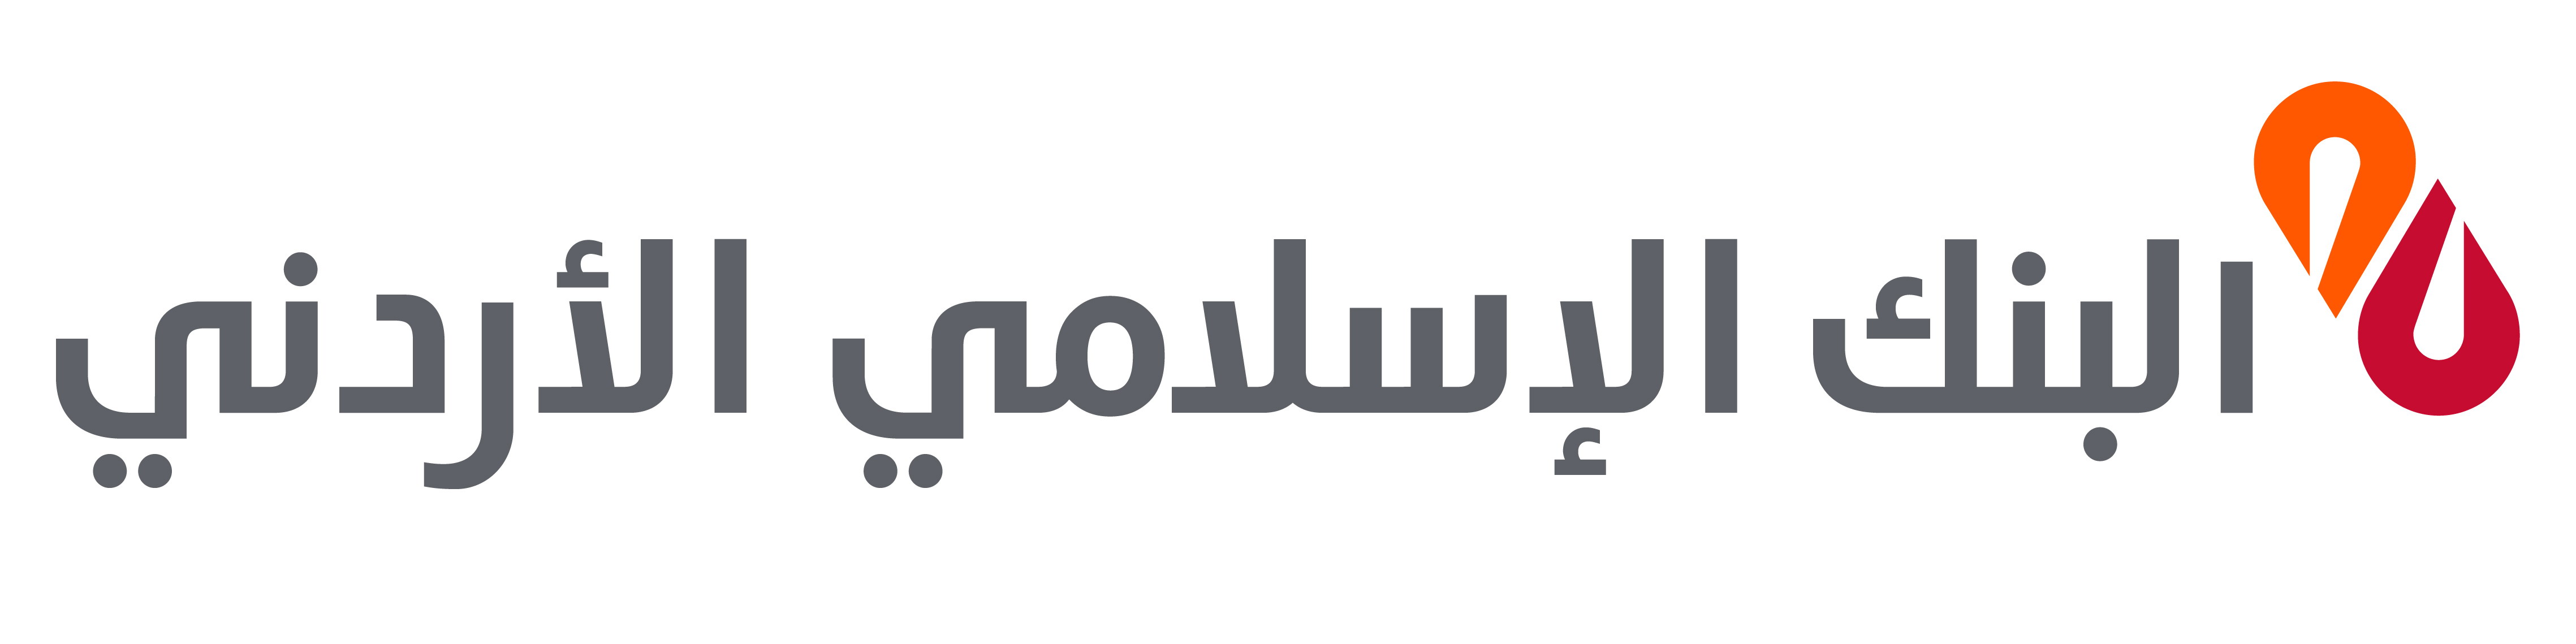 البنك الإسلامي الأردني  يدعم صندوق الطالبة الفقيرة في كلية المجتمع الاسلامي